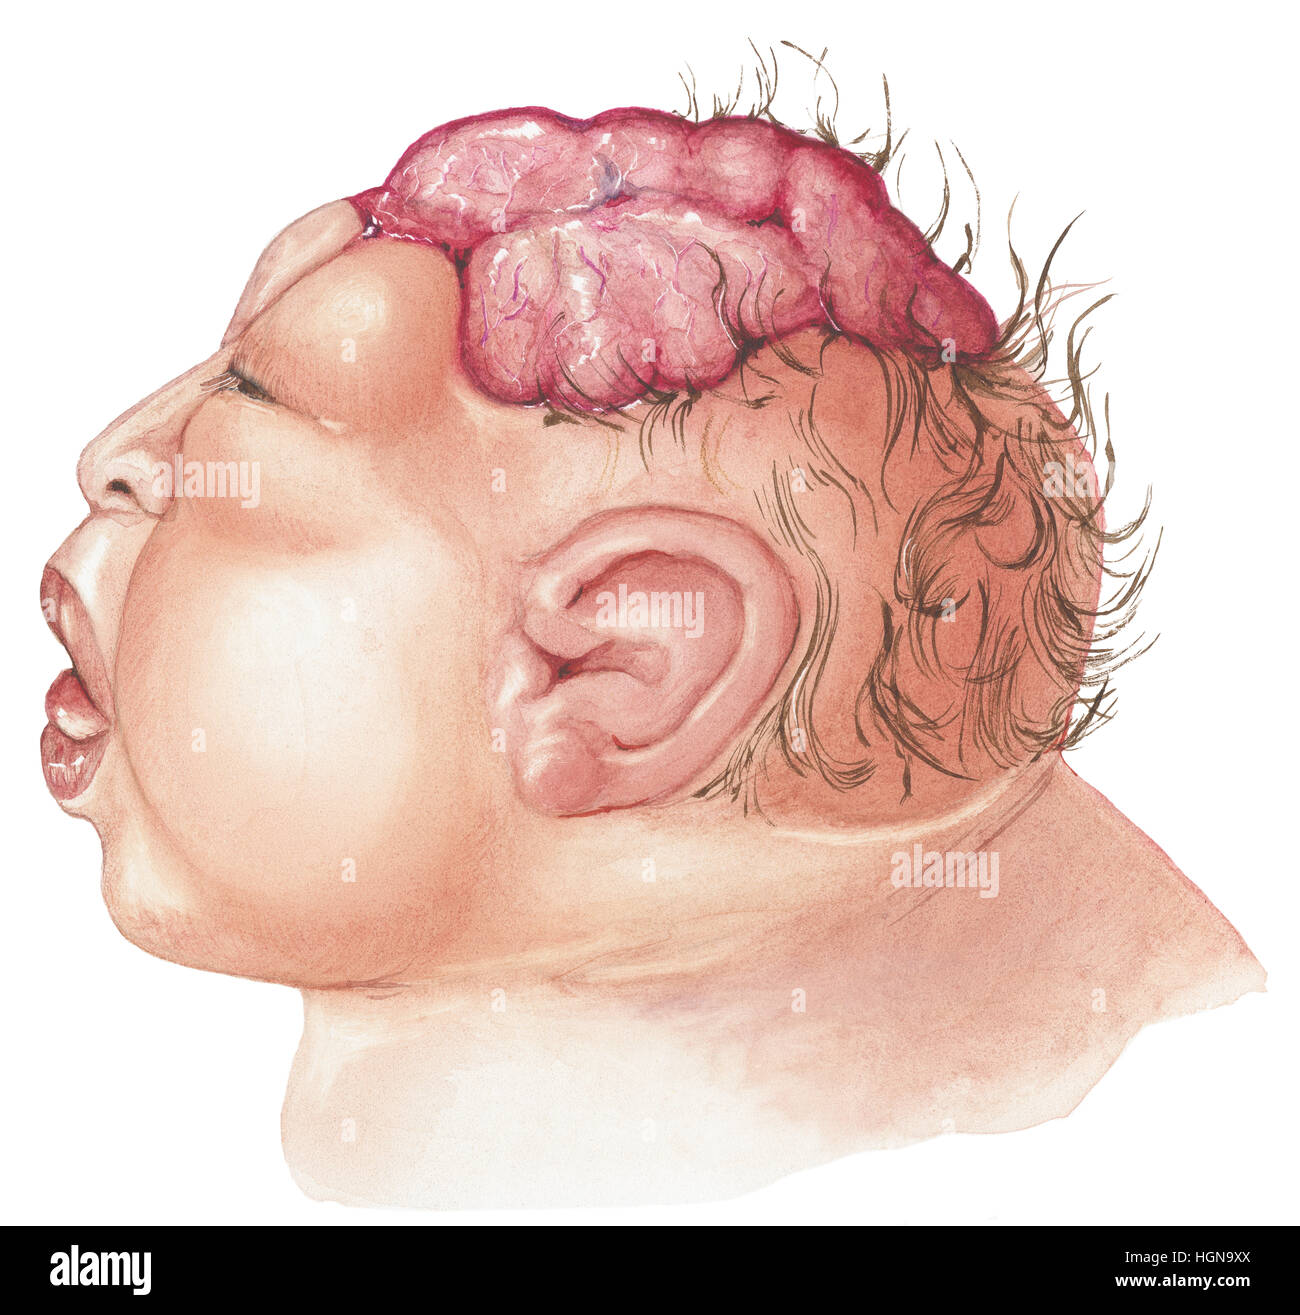 Ein neugeborenes Baby mit Anenzephalie zeigt das Gehirn durch den Schädel. Stockfoto